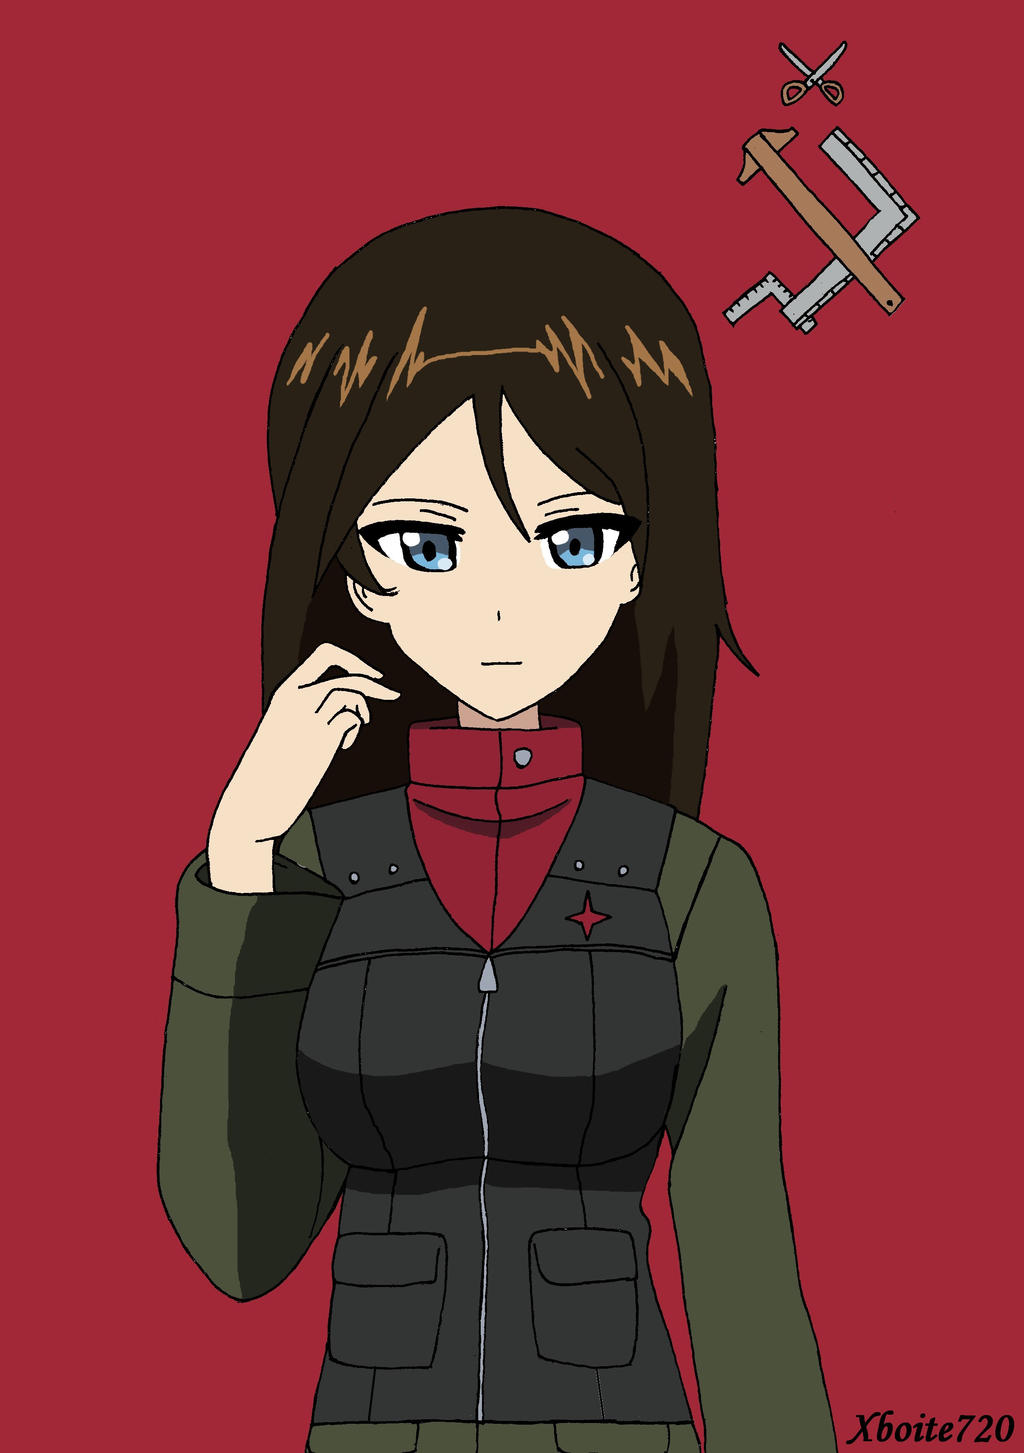 Girls und Panzer: Saishuusou Part 2 Folder Icon by Edgina36 on DeviantArt